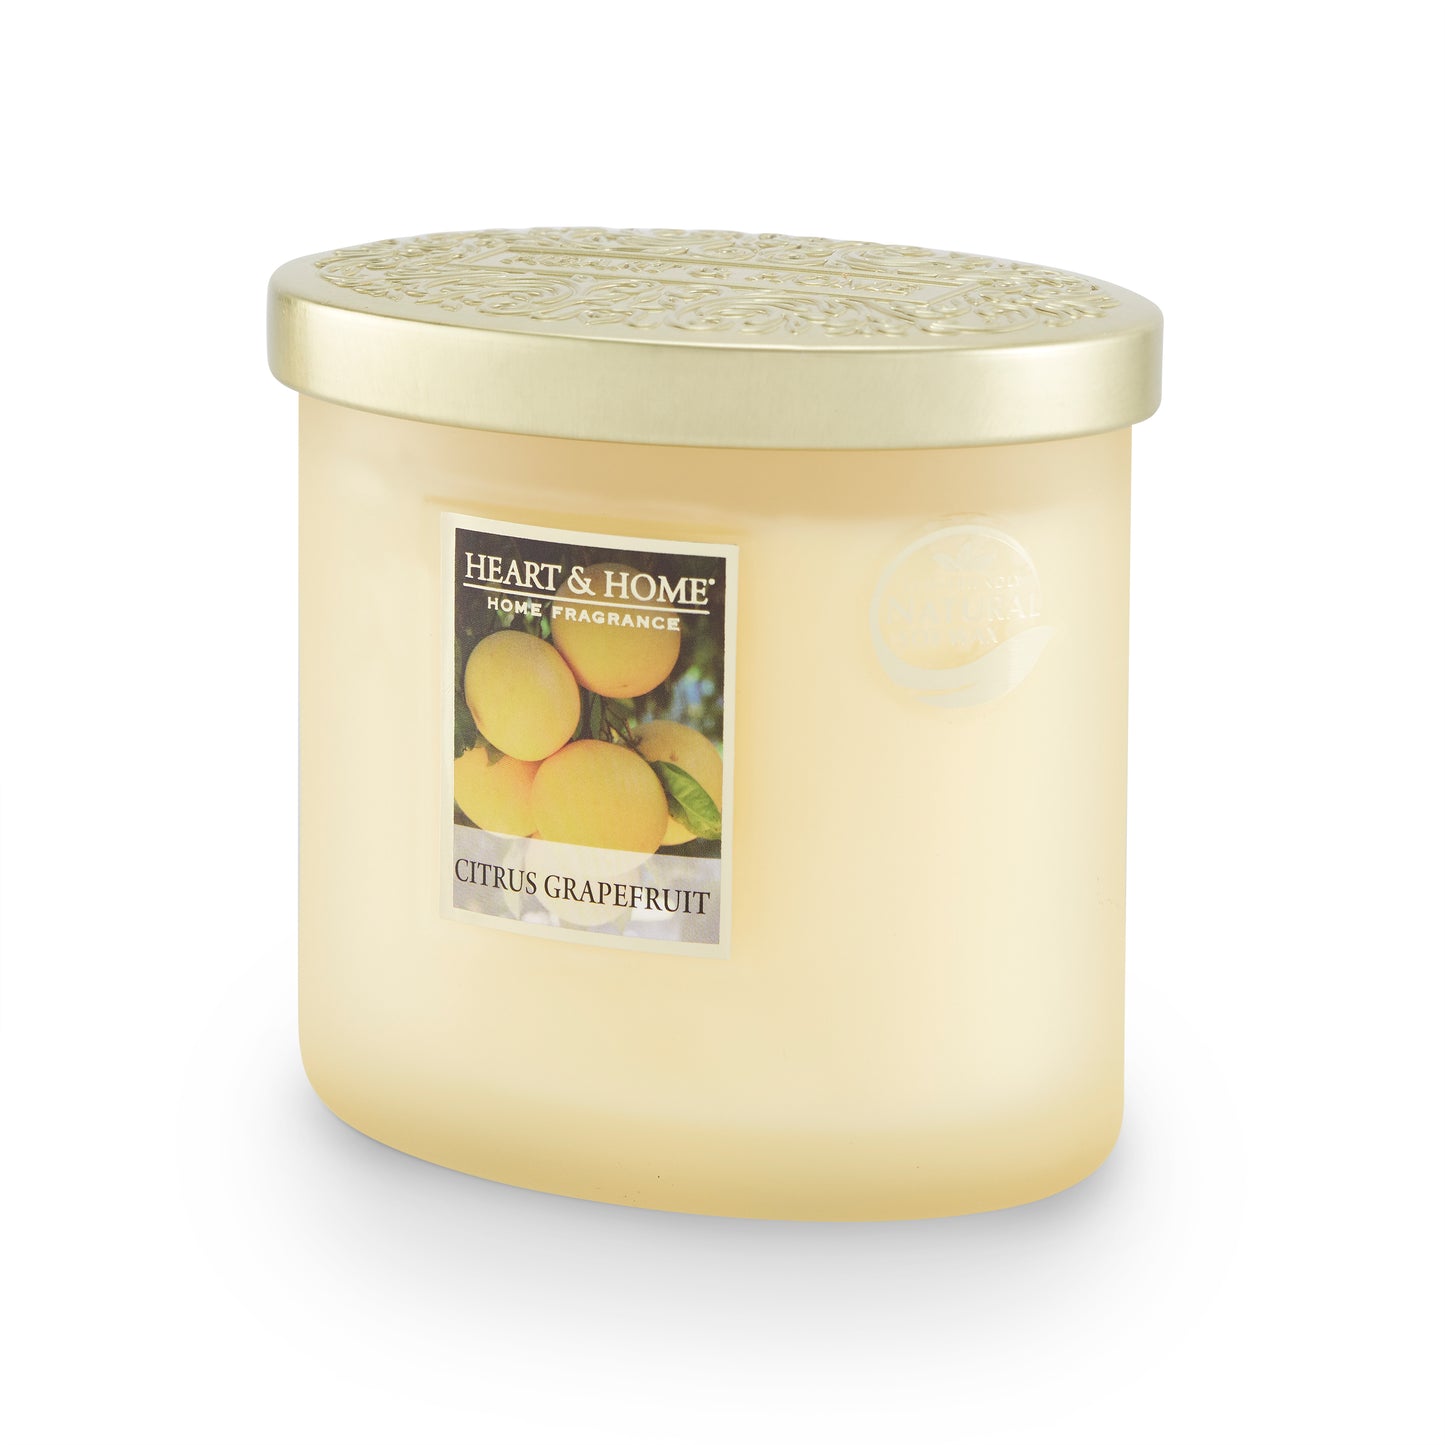 Citrus Grapefruit Soy Wax Candle Golden Citrus Delight! Candle Gift Idea